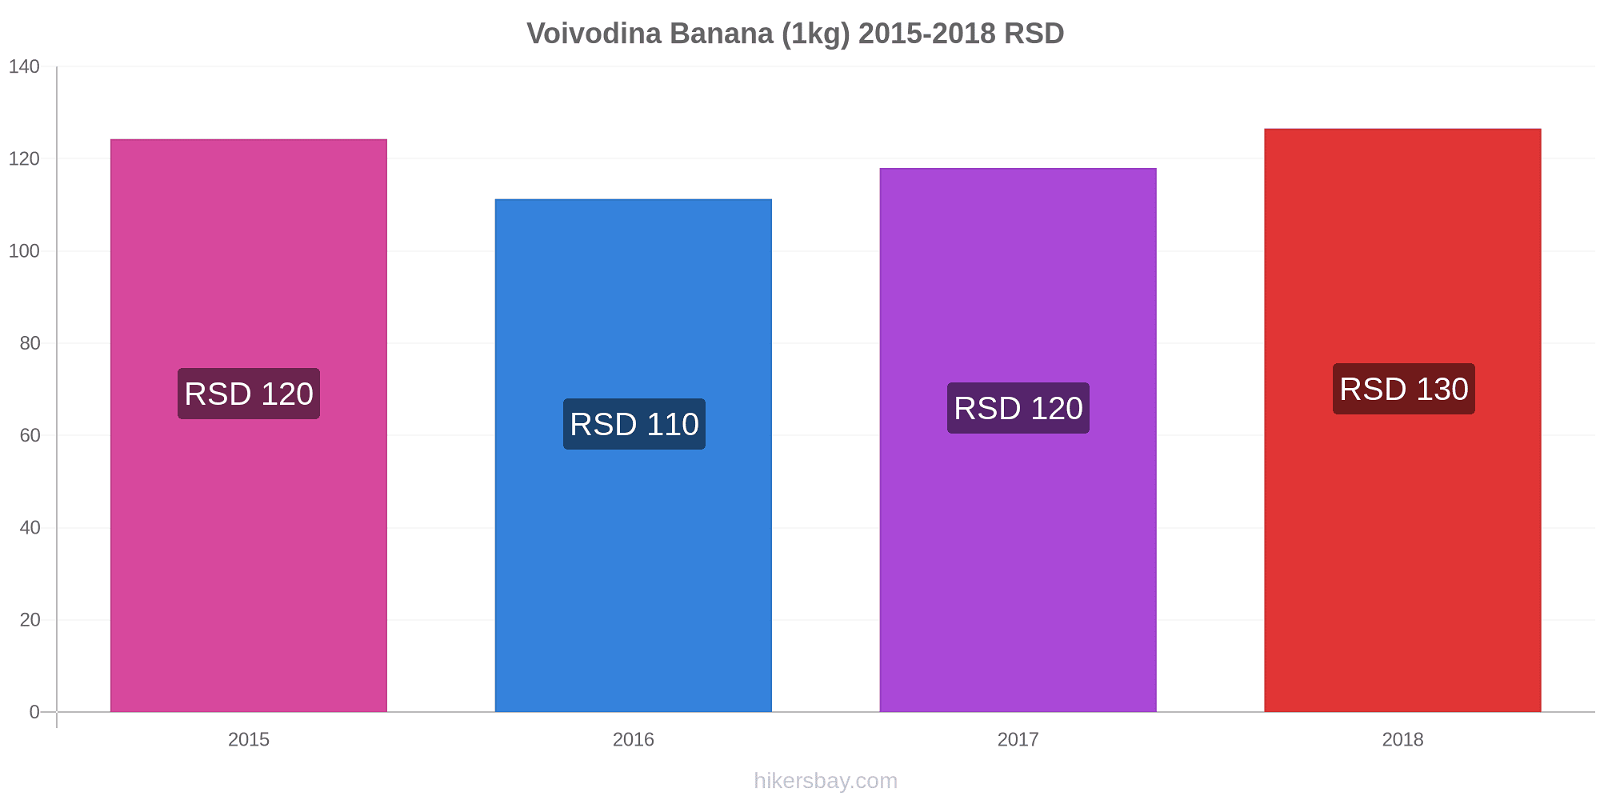 Voivodina variação de preço Banana (1kg) hikersbay.com